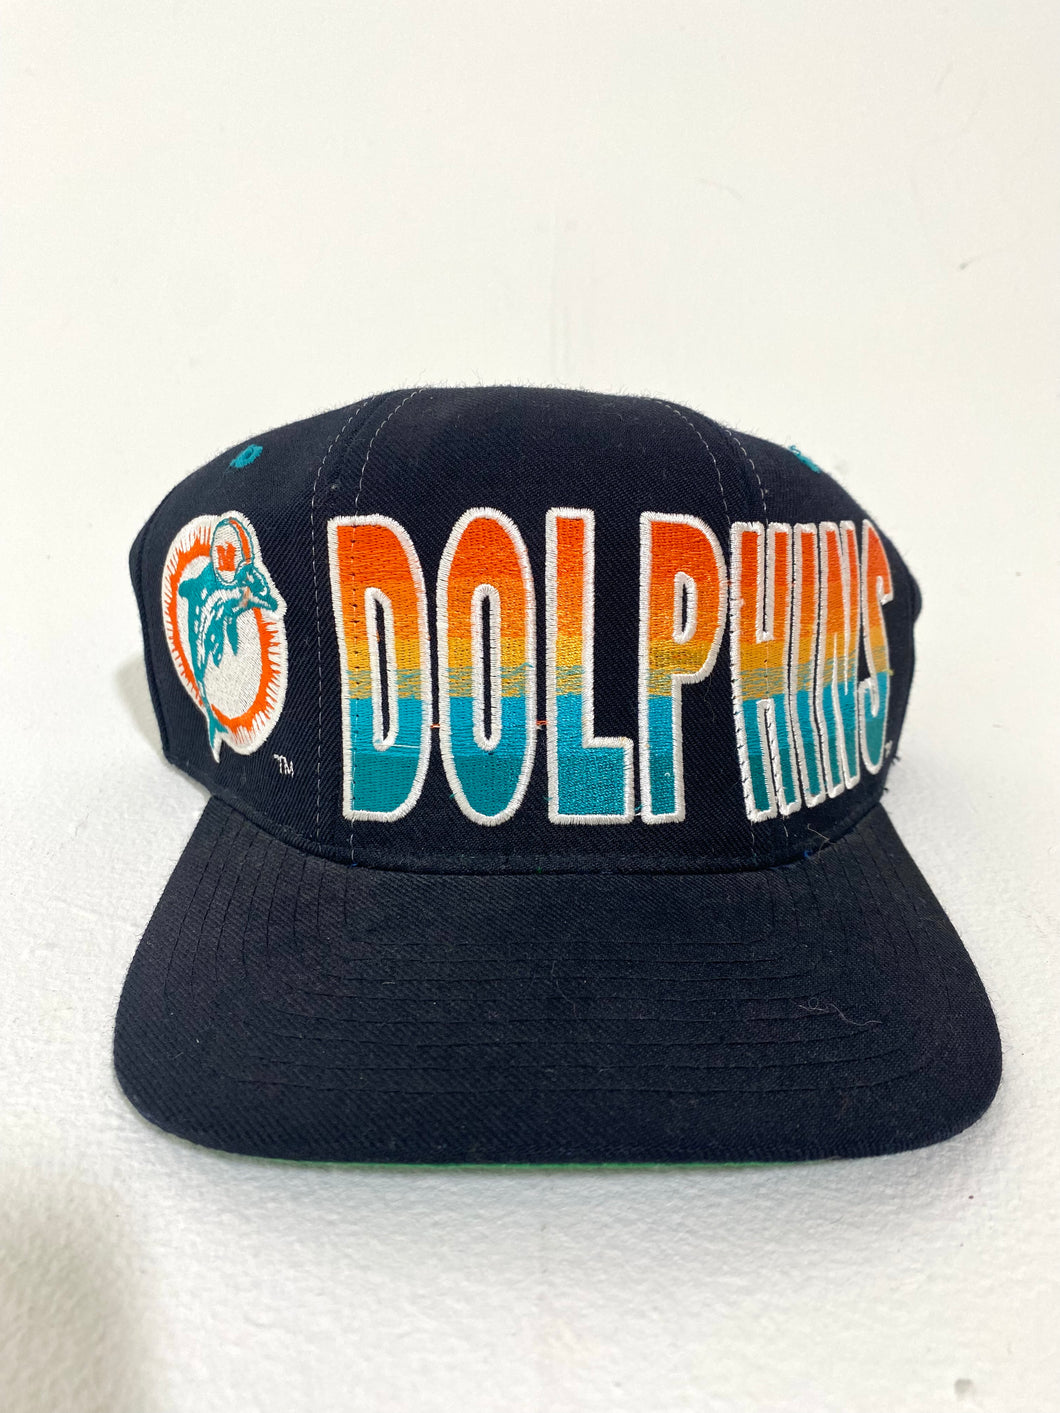 miami dolphins vintage gear